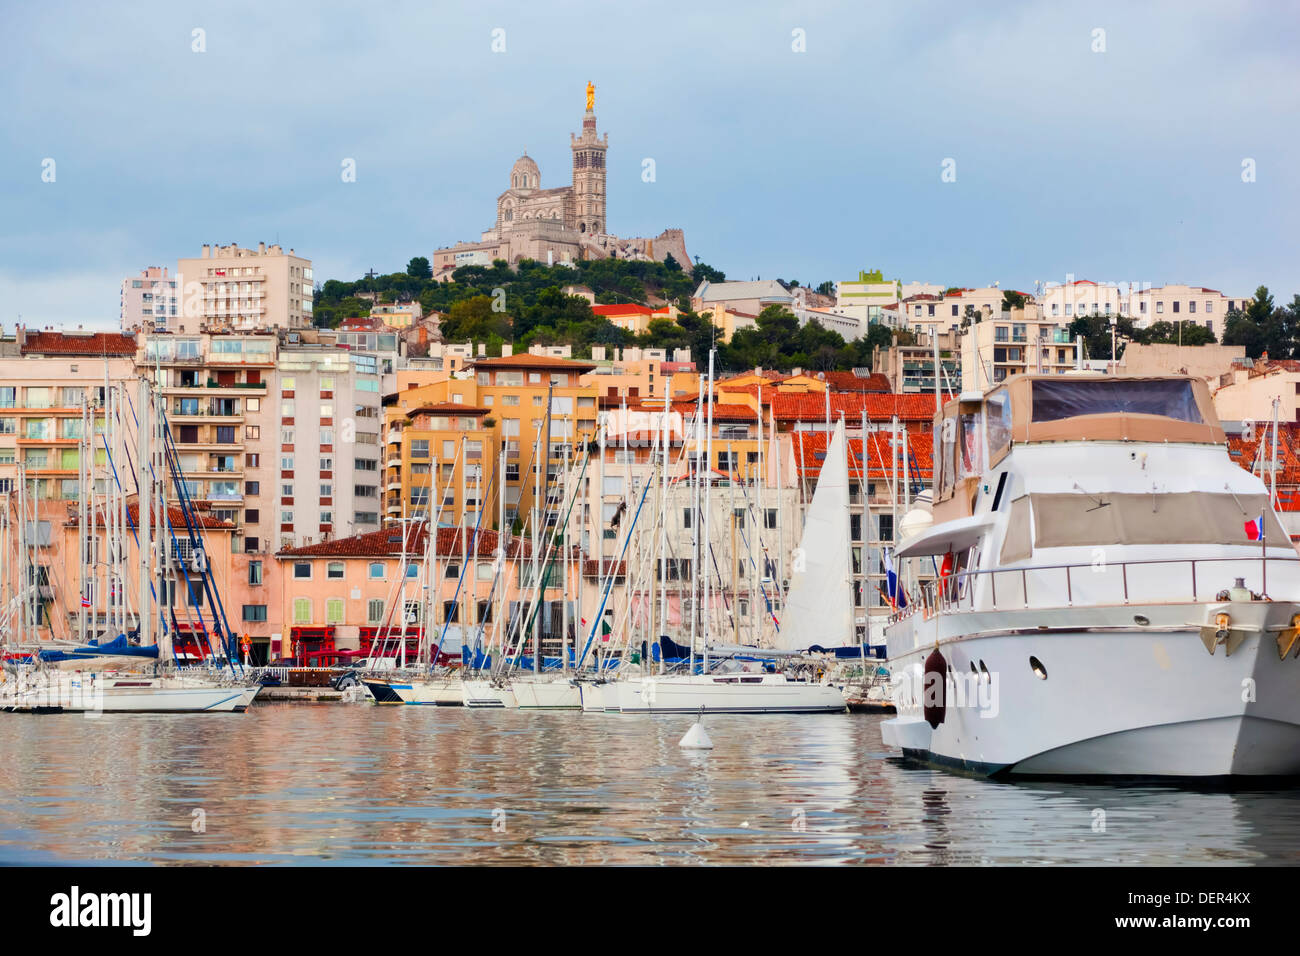 Marseille, Francia : il famoso porto vecchio con vista sulla cattedrale di Notre Dame de la Garde cattedrale Foto Stock